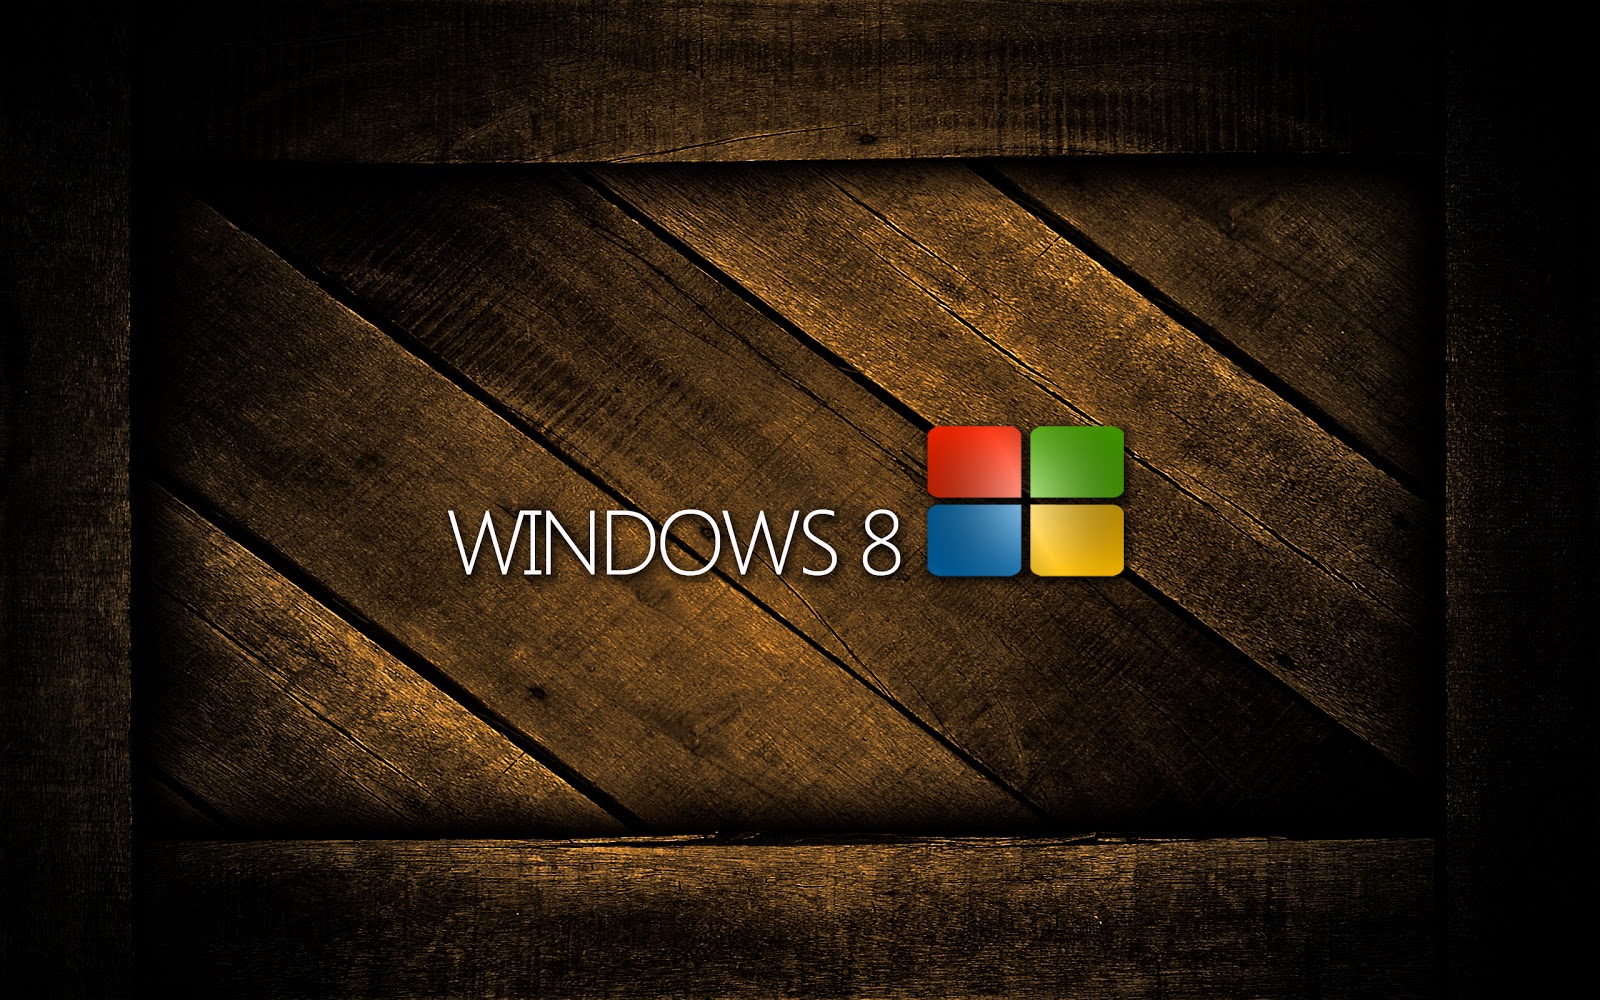 Tận hưởng những bức hình nền Windows 8 HD miễn phí đầy sáng tạo và độc đáo. Đưa ra phong cách của riêng bạn và tạo ra không gian làm việc thật độc đáo với những hình ảnh chất lượng cao được thiết kế đặc biệt cho Windows 8.